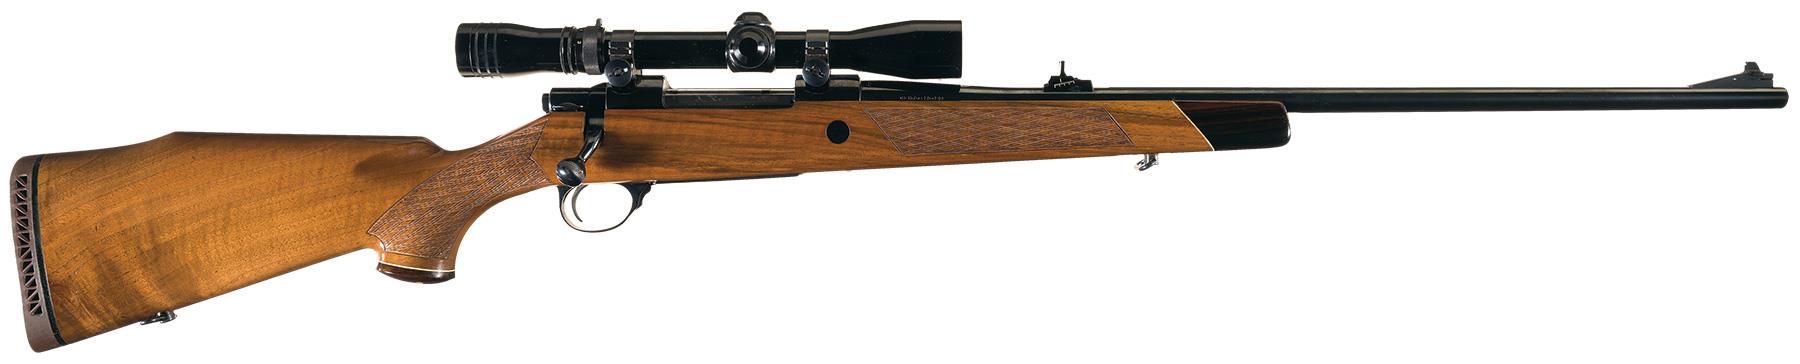 synthetic gun stock for l61r sako finnbear